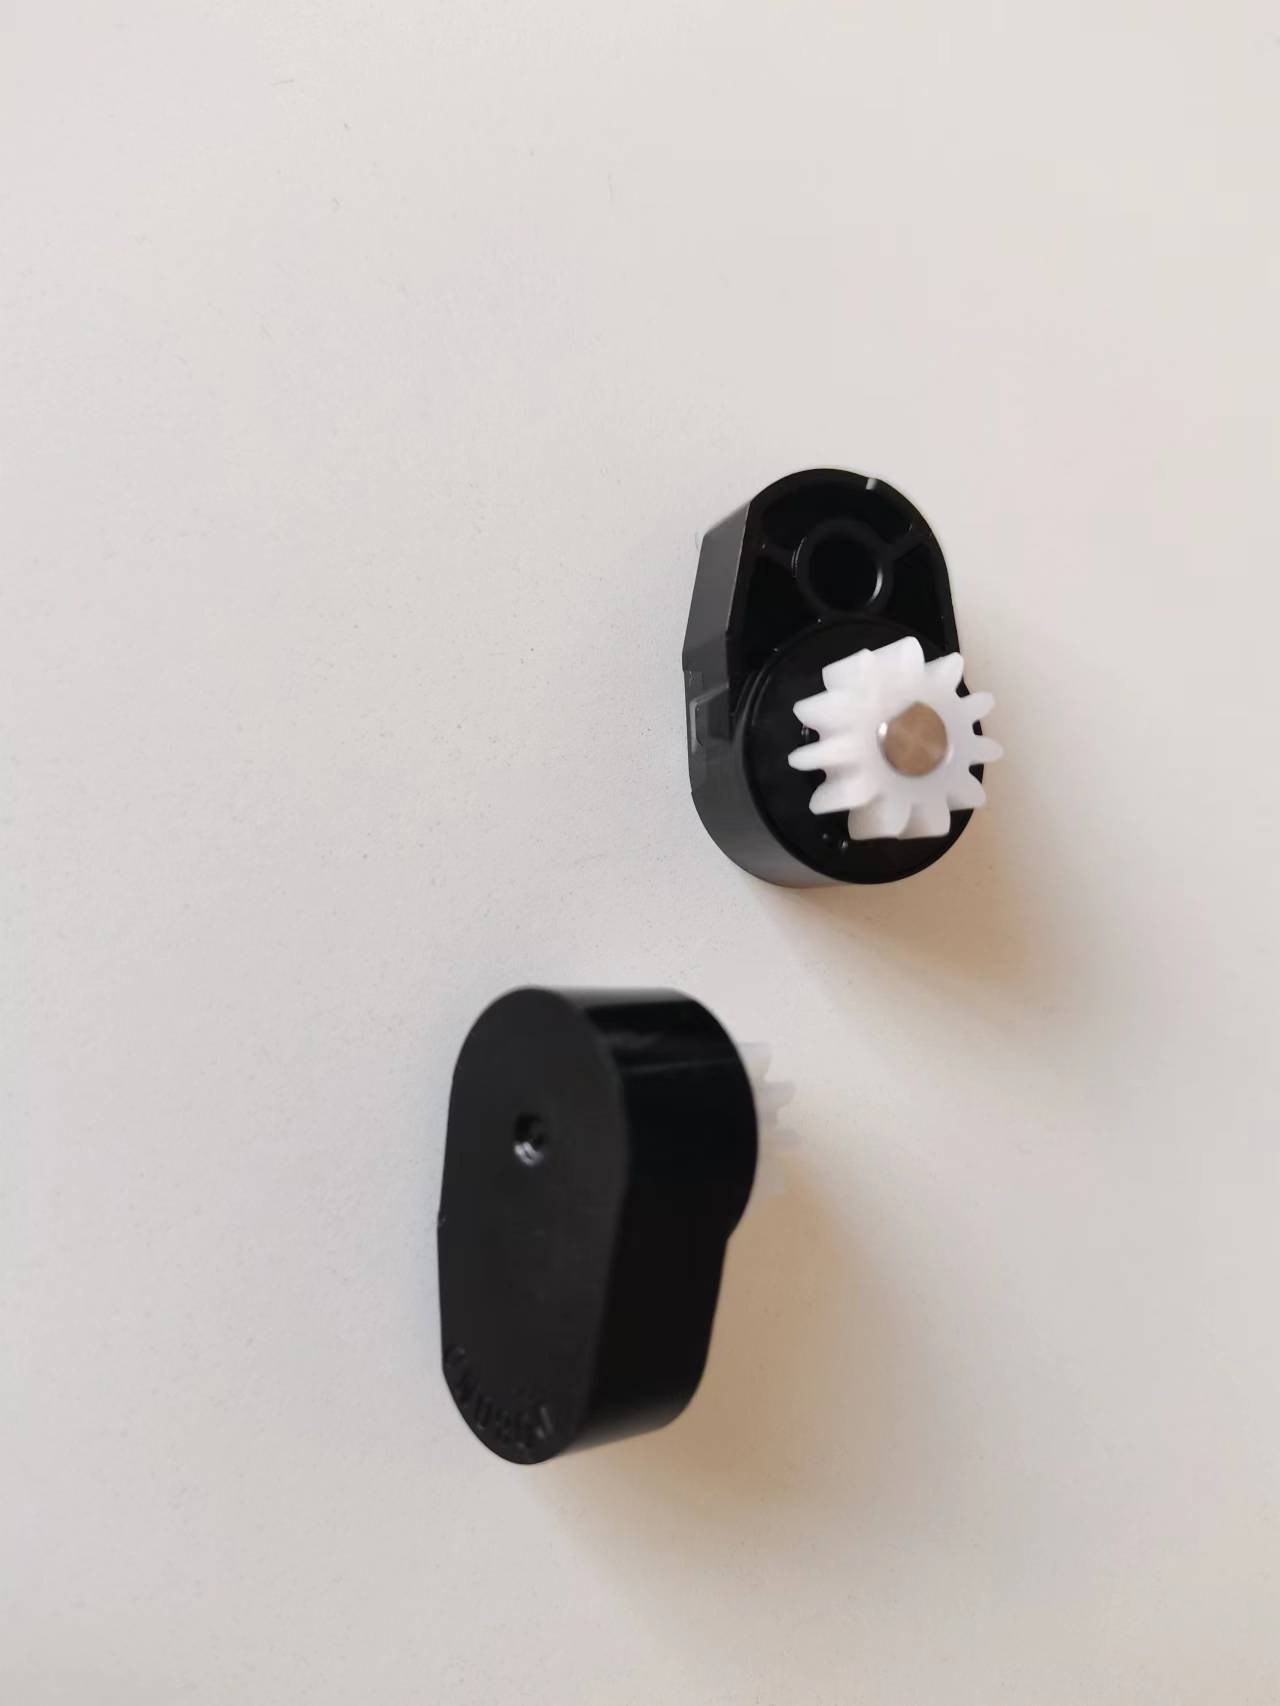 Amortiguadores giratorios bidireccionales recién moldeados Dobond amortiguador bidireccional para riel deslizante de electrodomésticos